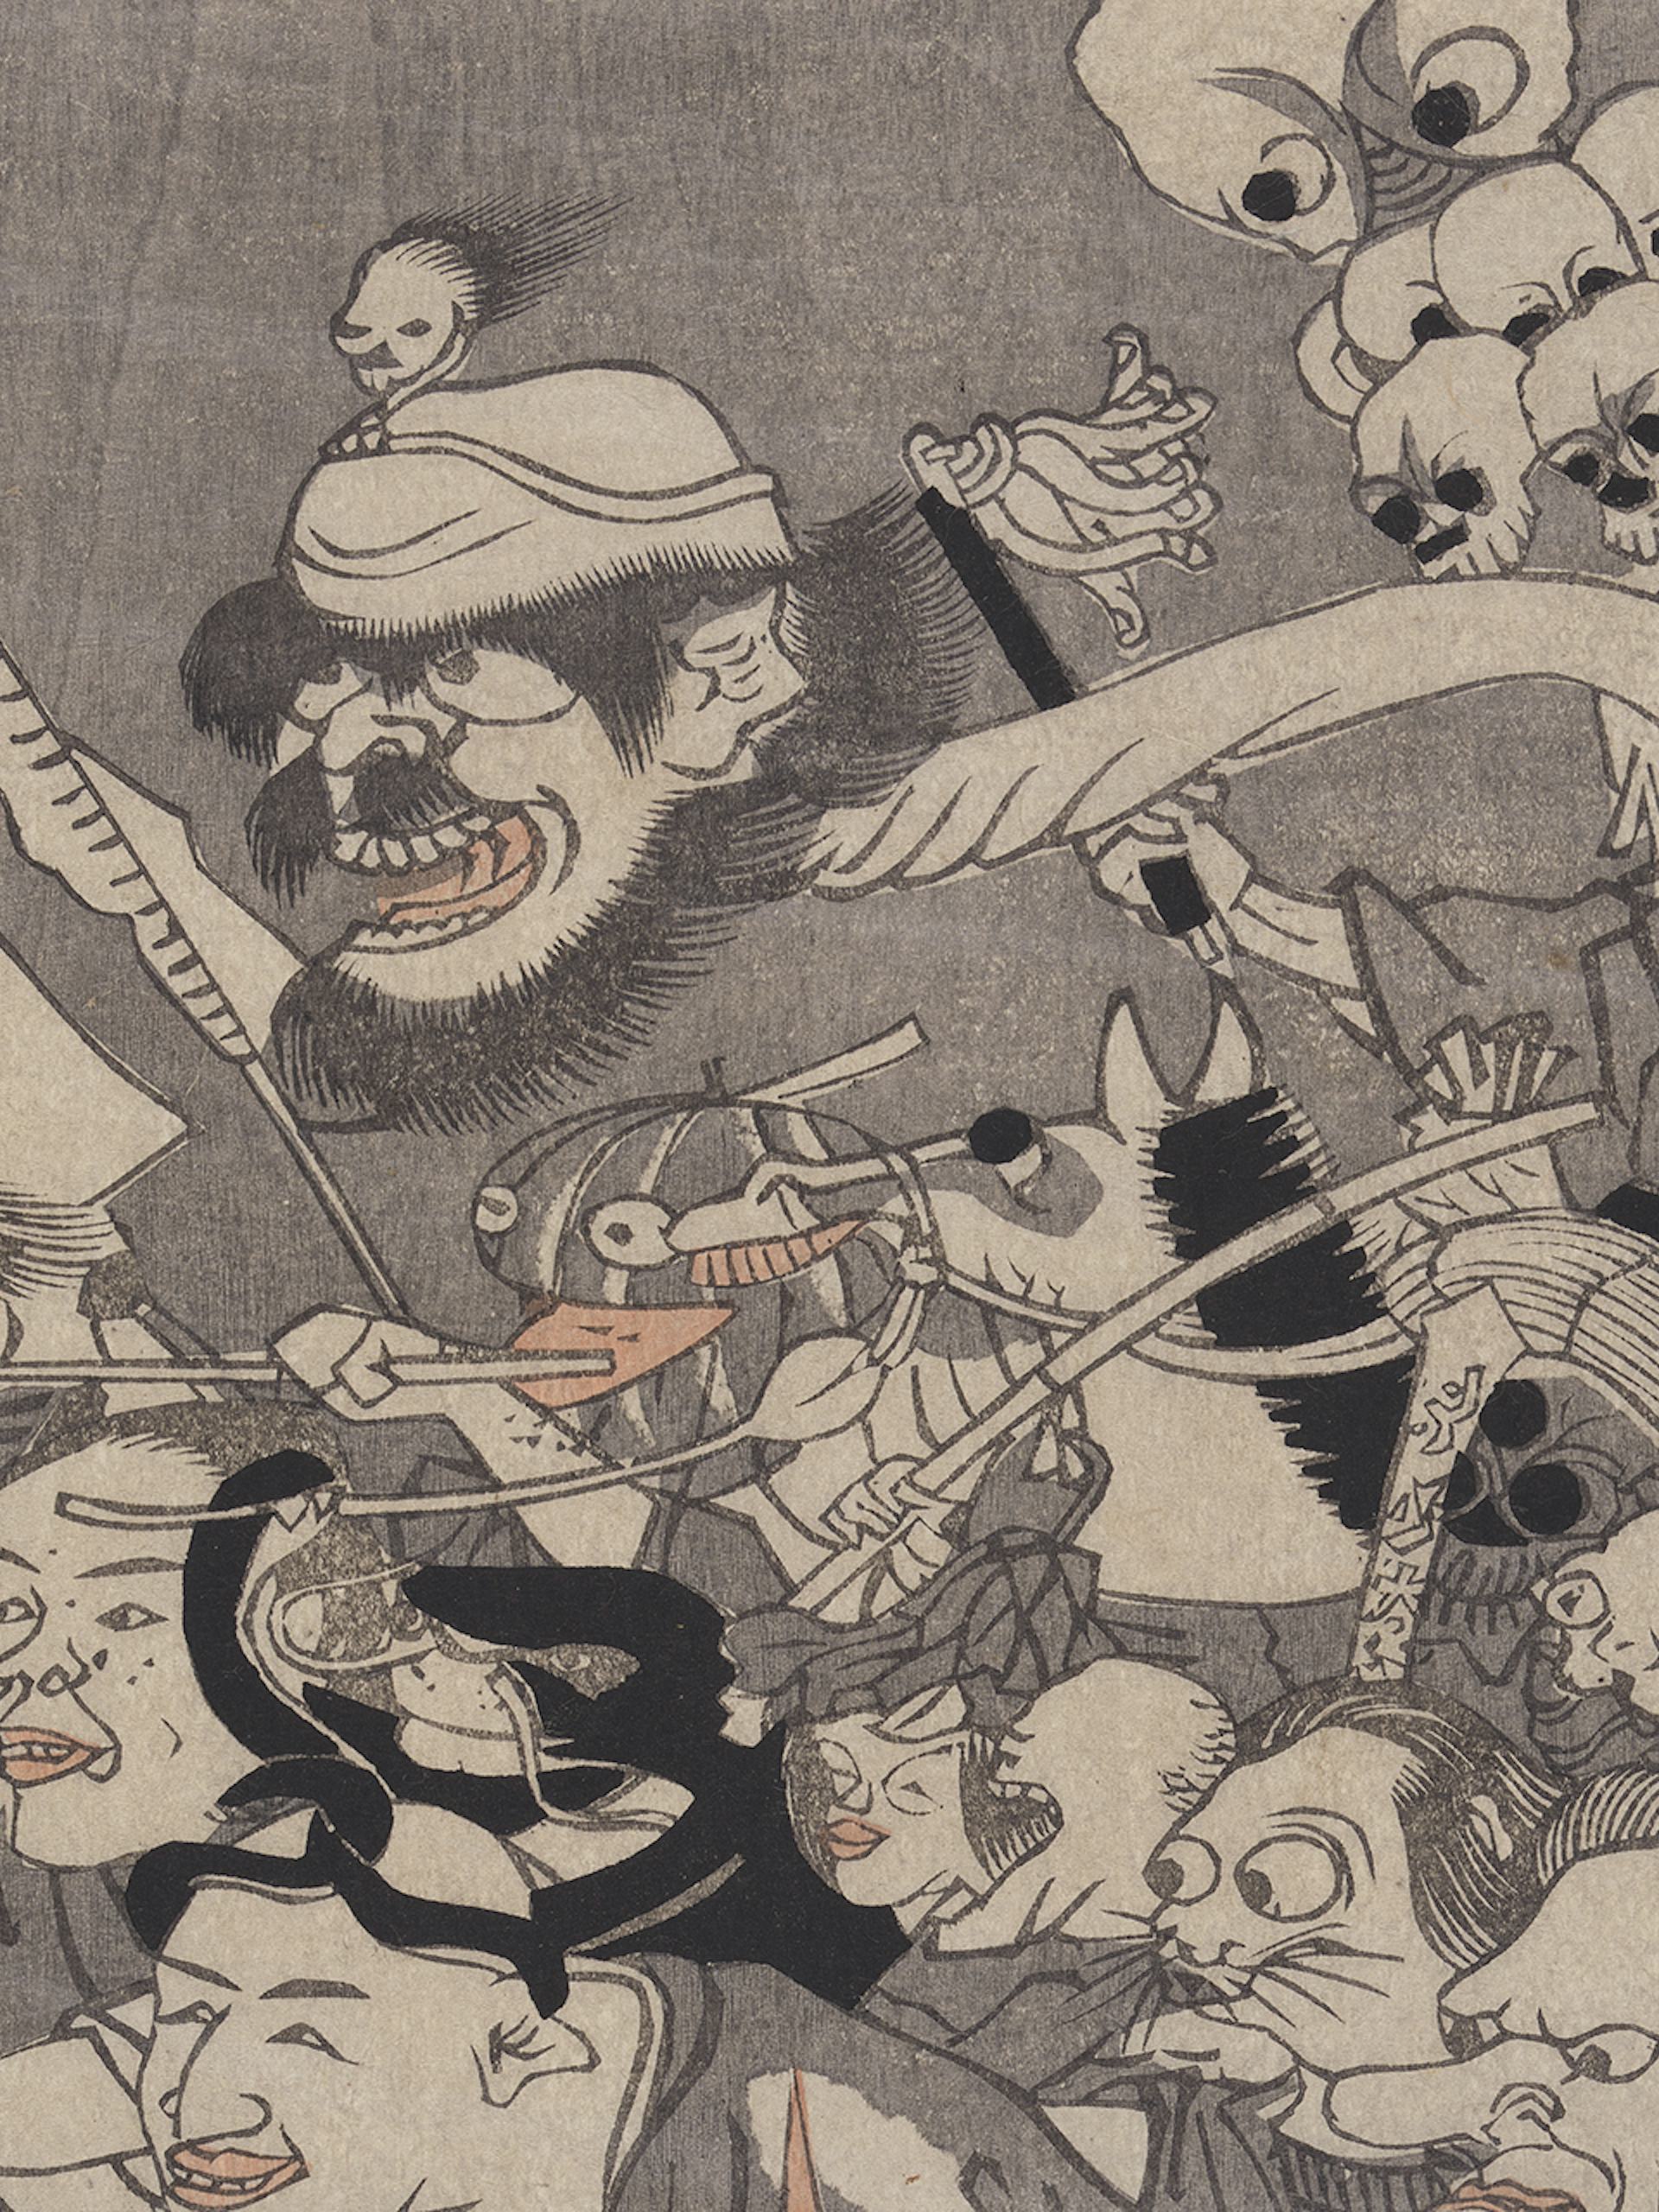 Japanese Mythology Hero Image